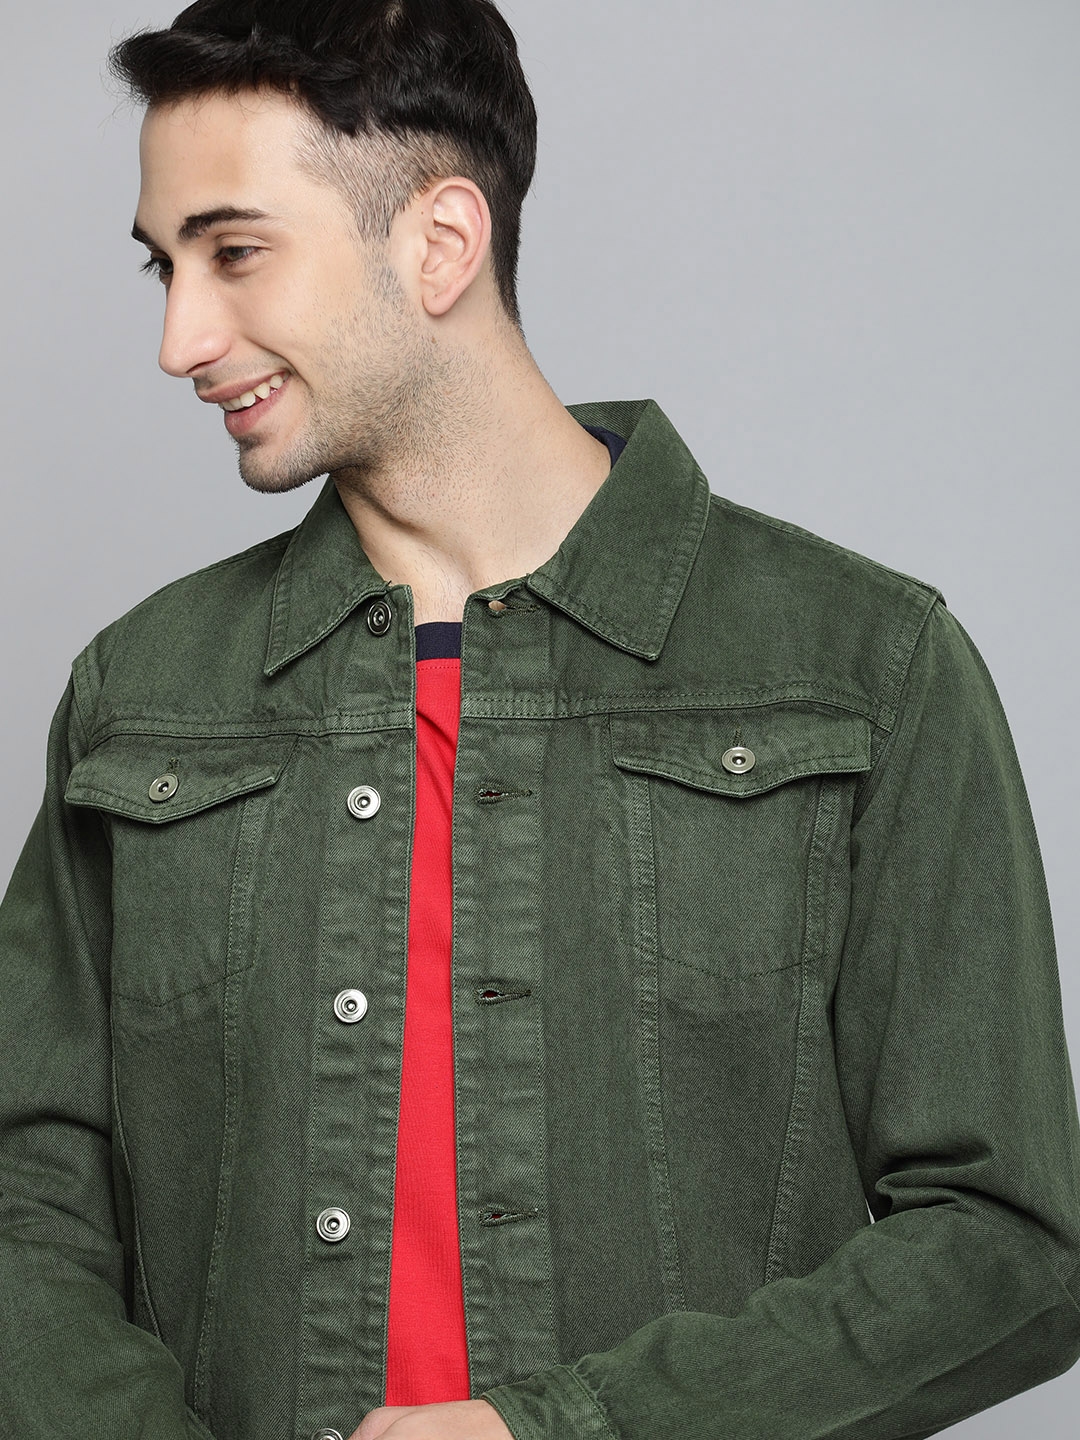 Buy Harvard Men Olive Green Solid Denim Jacket - Jackets for Men ...